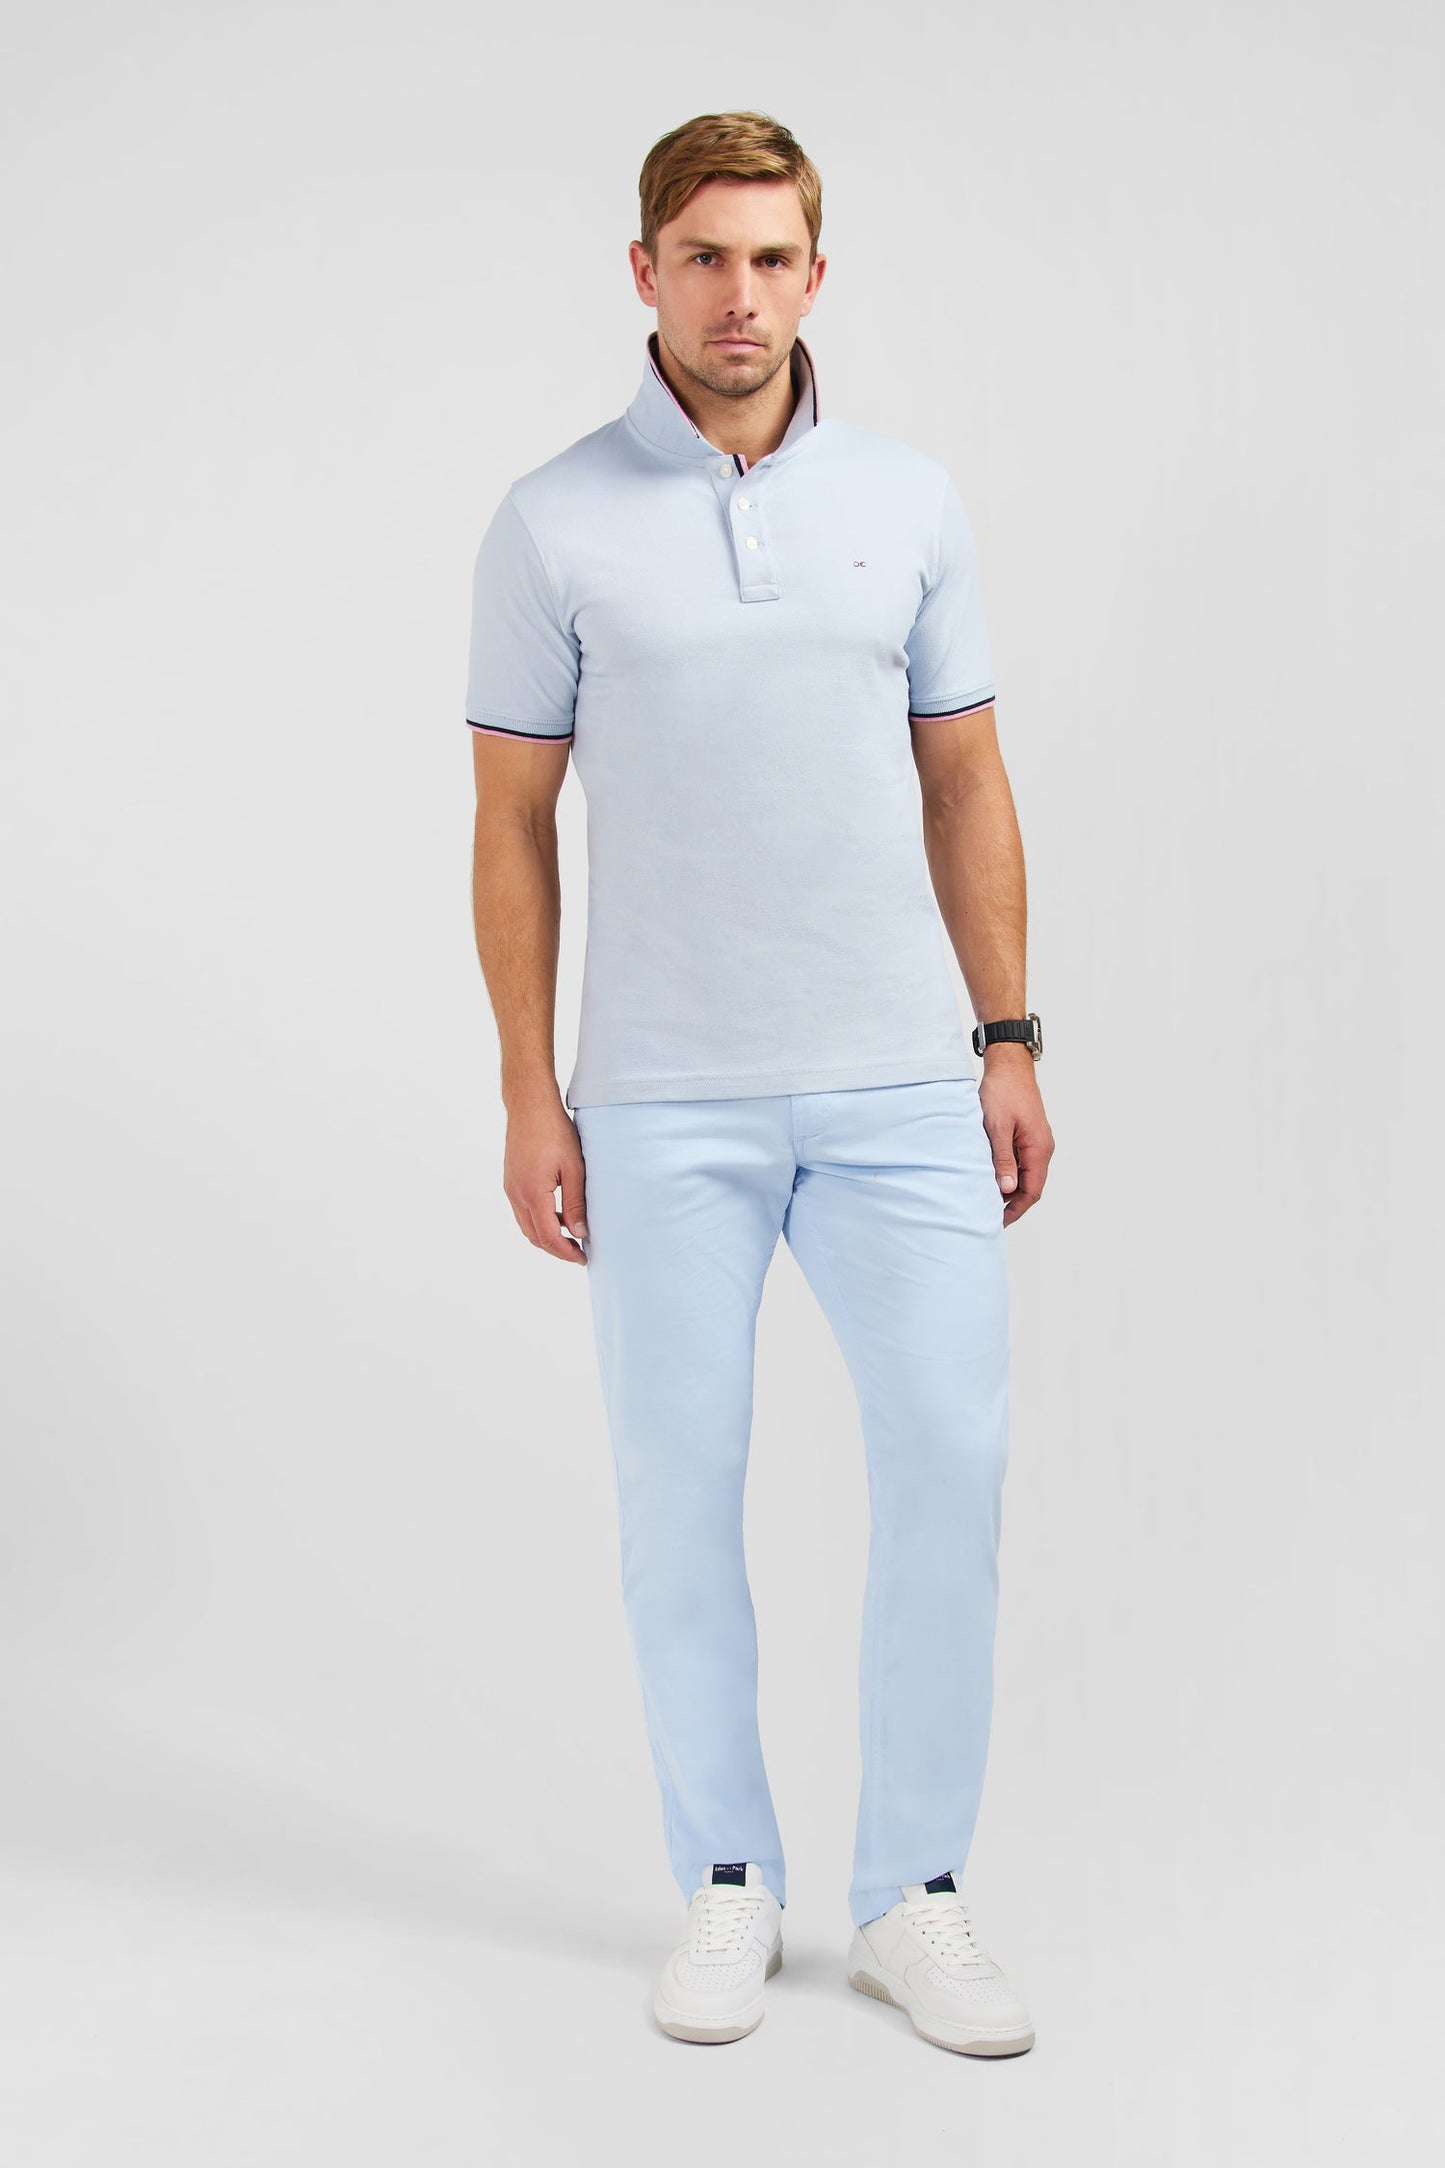 Polo bleu clair en coton Pima - Image 1